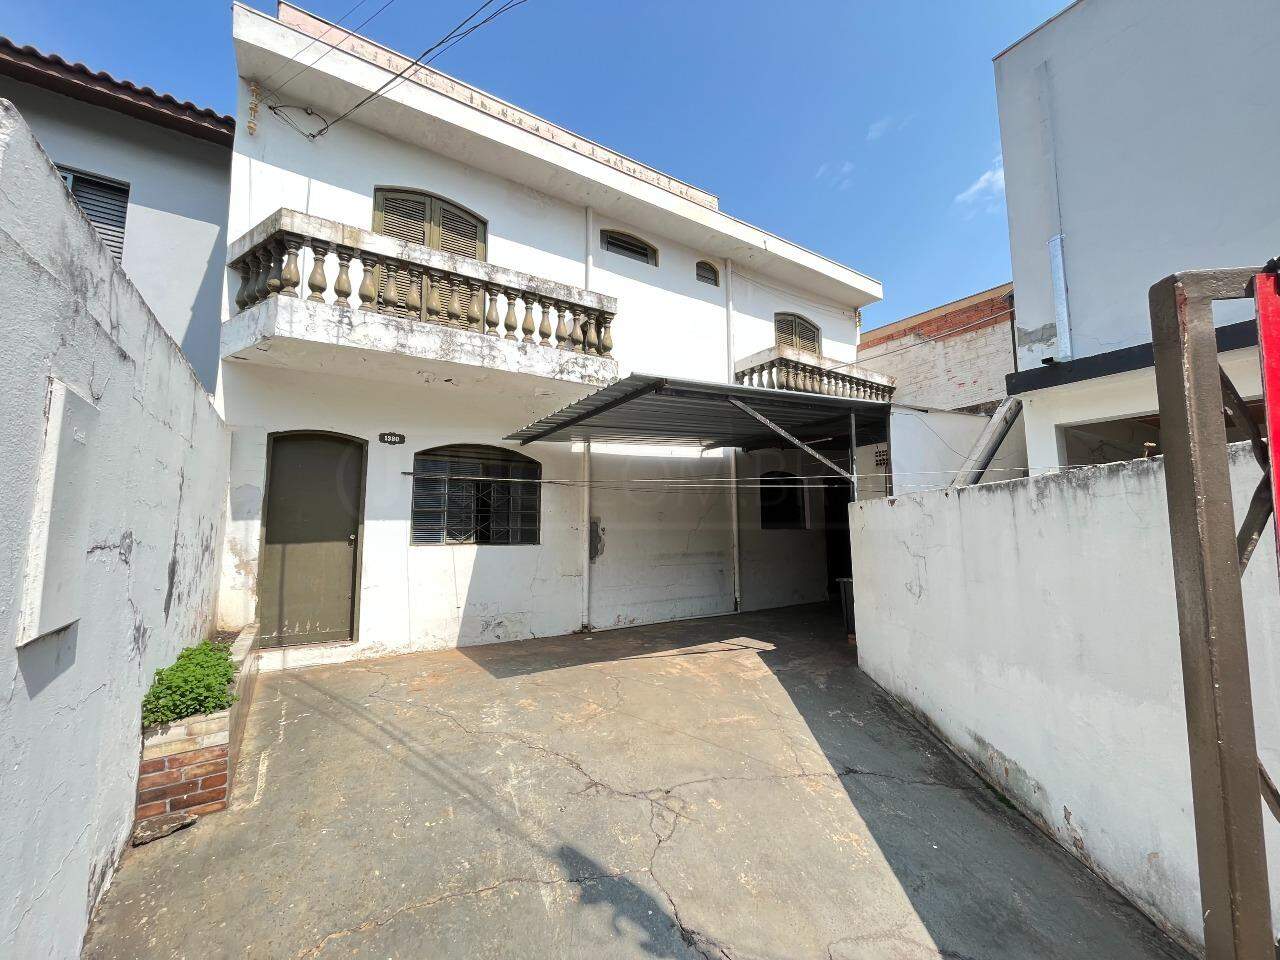 Casa à venda, 3 quartos, sendo 1 suíte, 3 vagas, no bairro Paulicéia em Piracicaba - SP